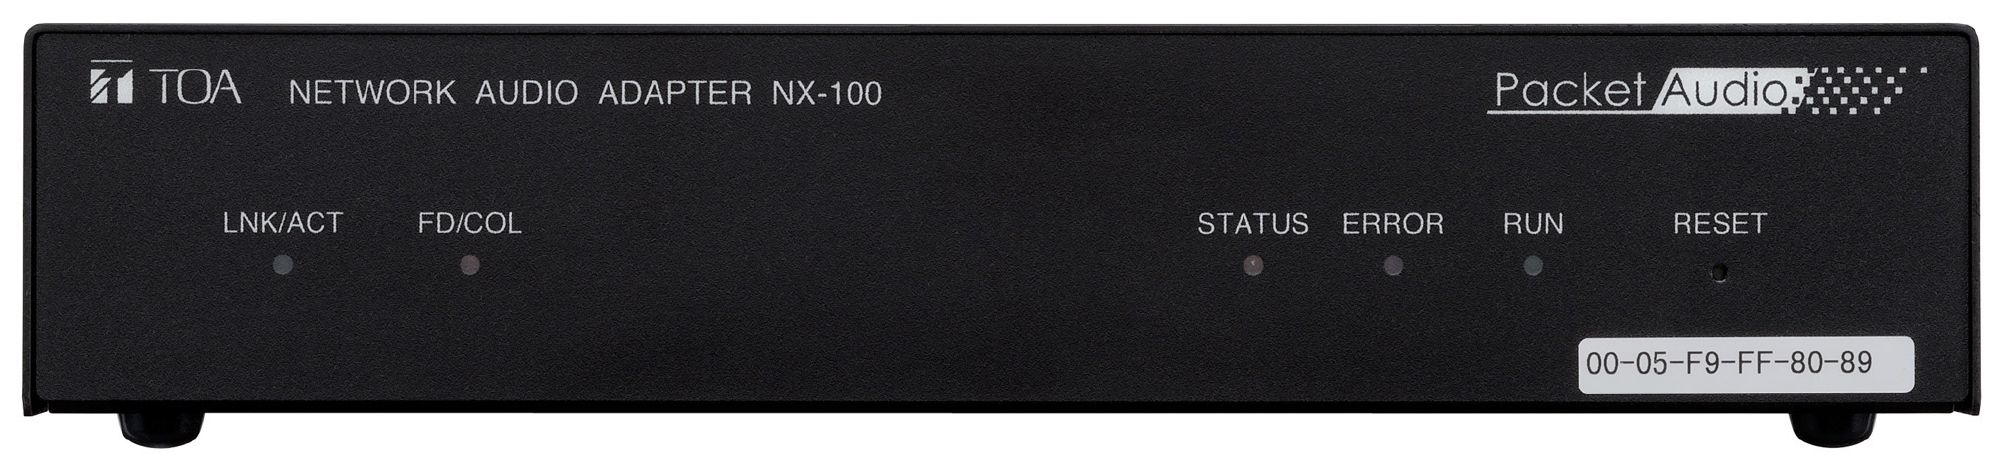 NX-100